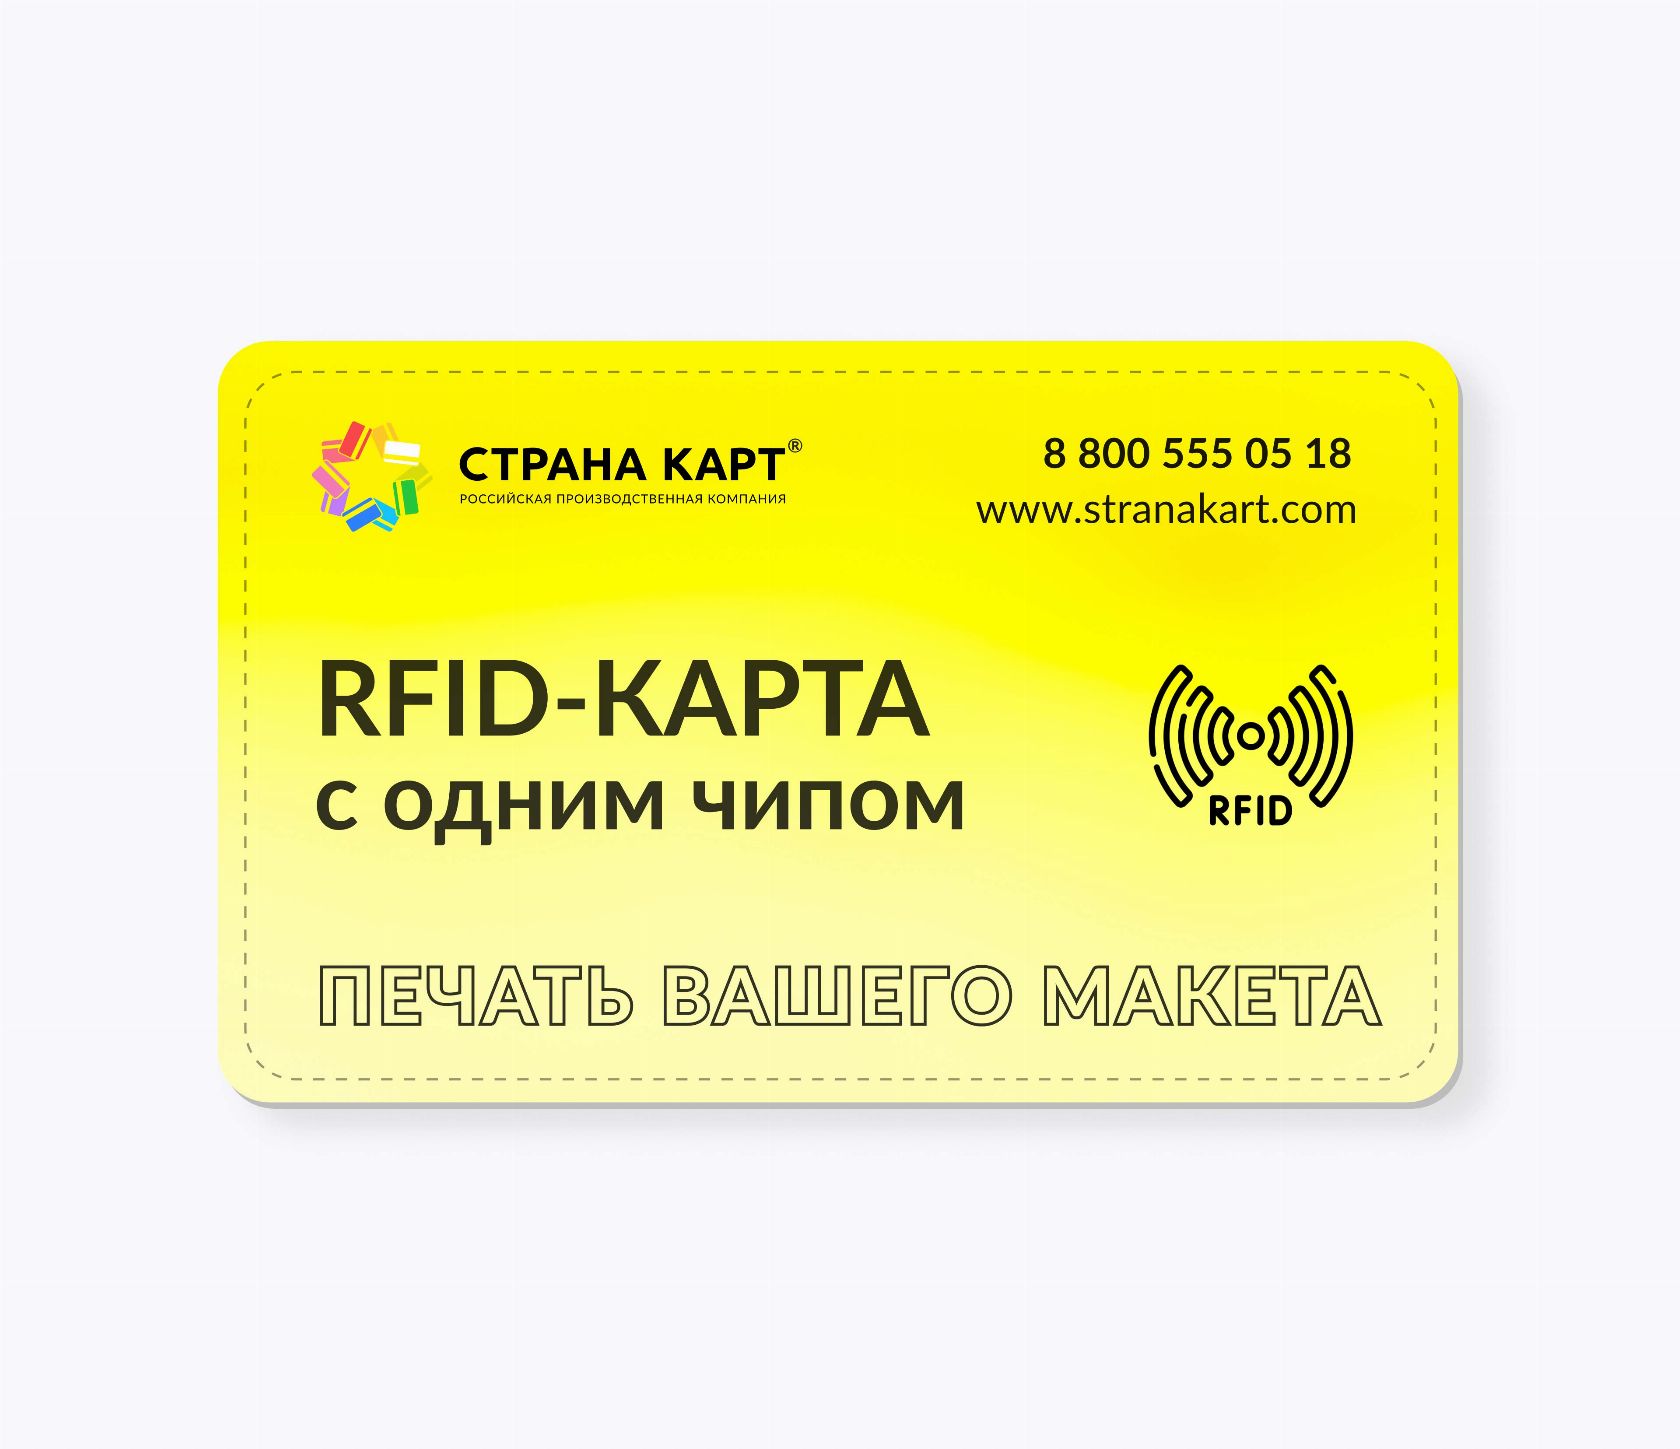 RFID-карты с чипом NXP NFC NTAG 215 NFC печать вашего макета RFID-карты с чипом NXP NTAG 215 NFC